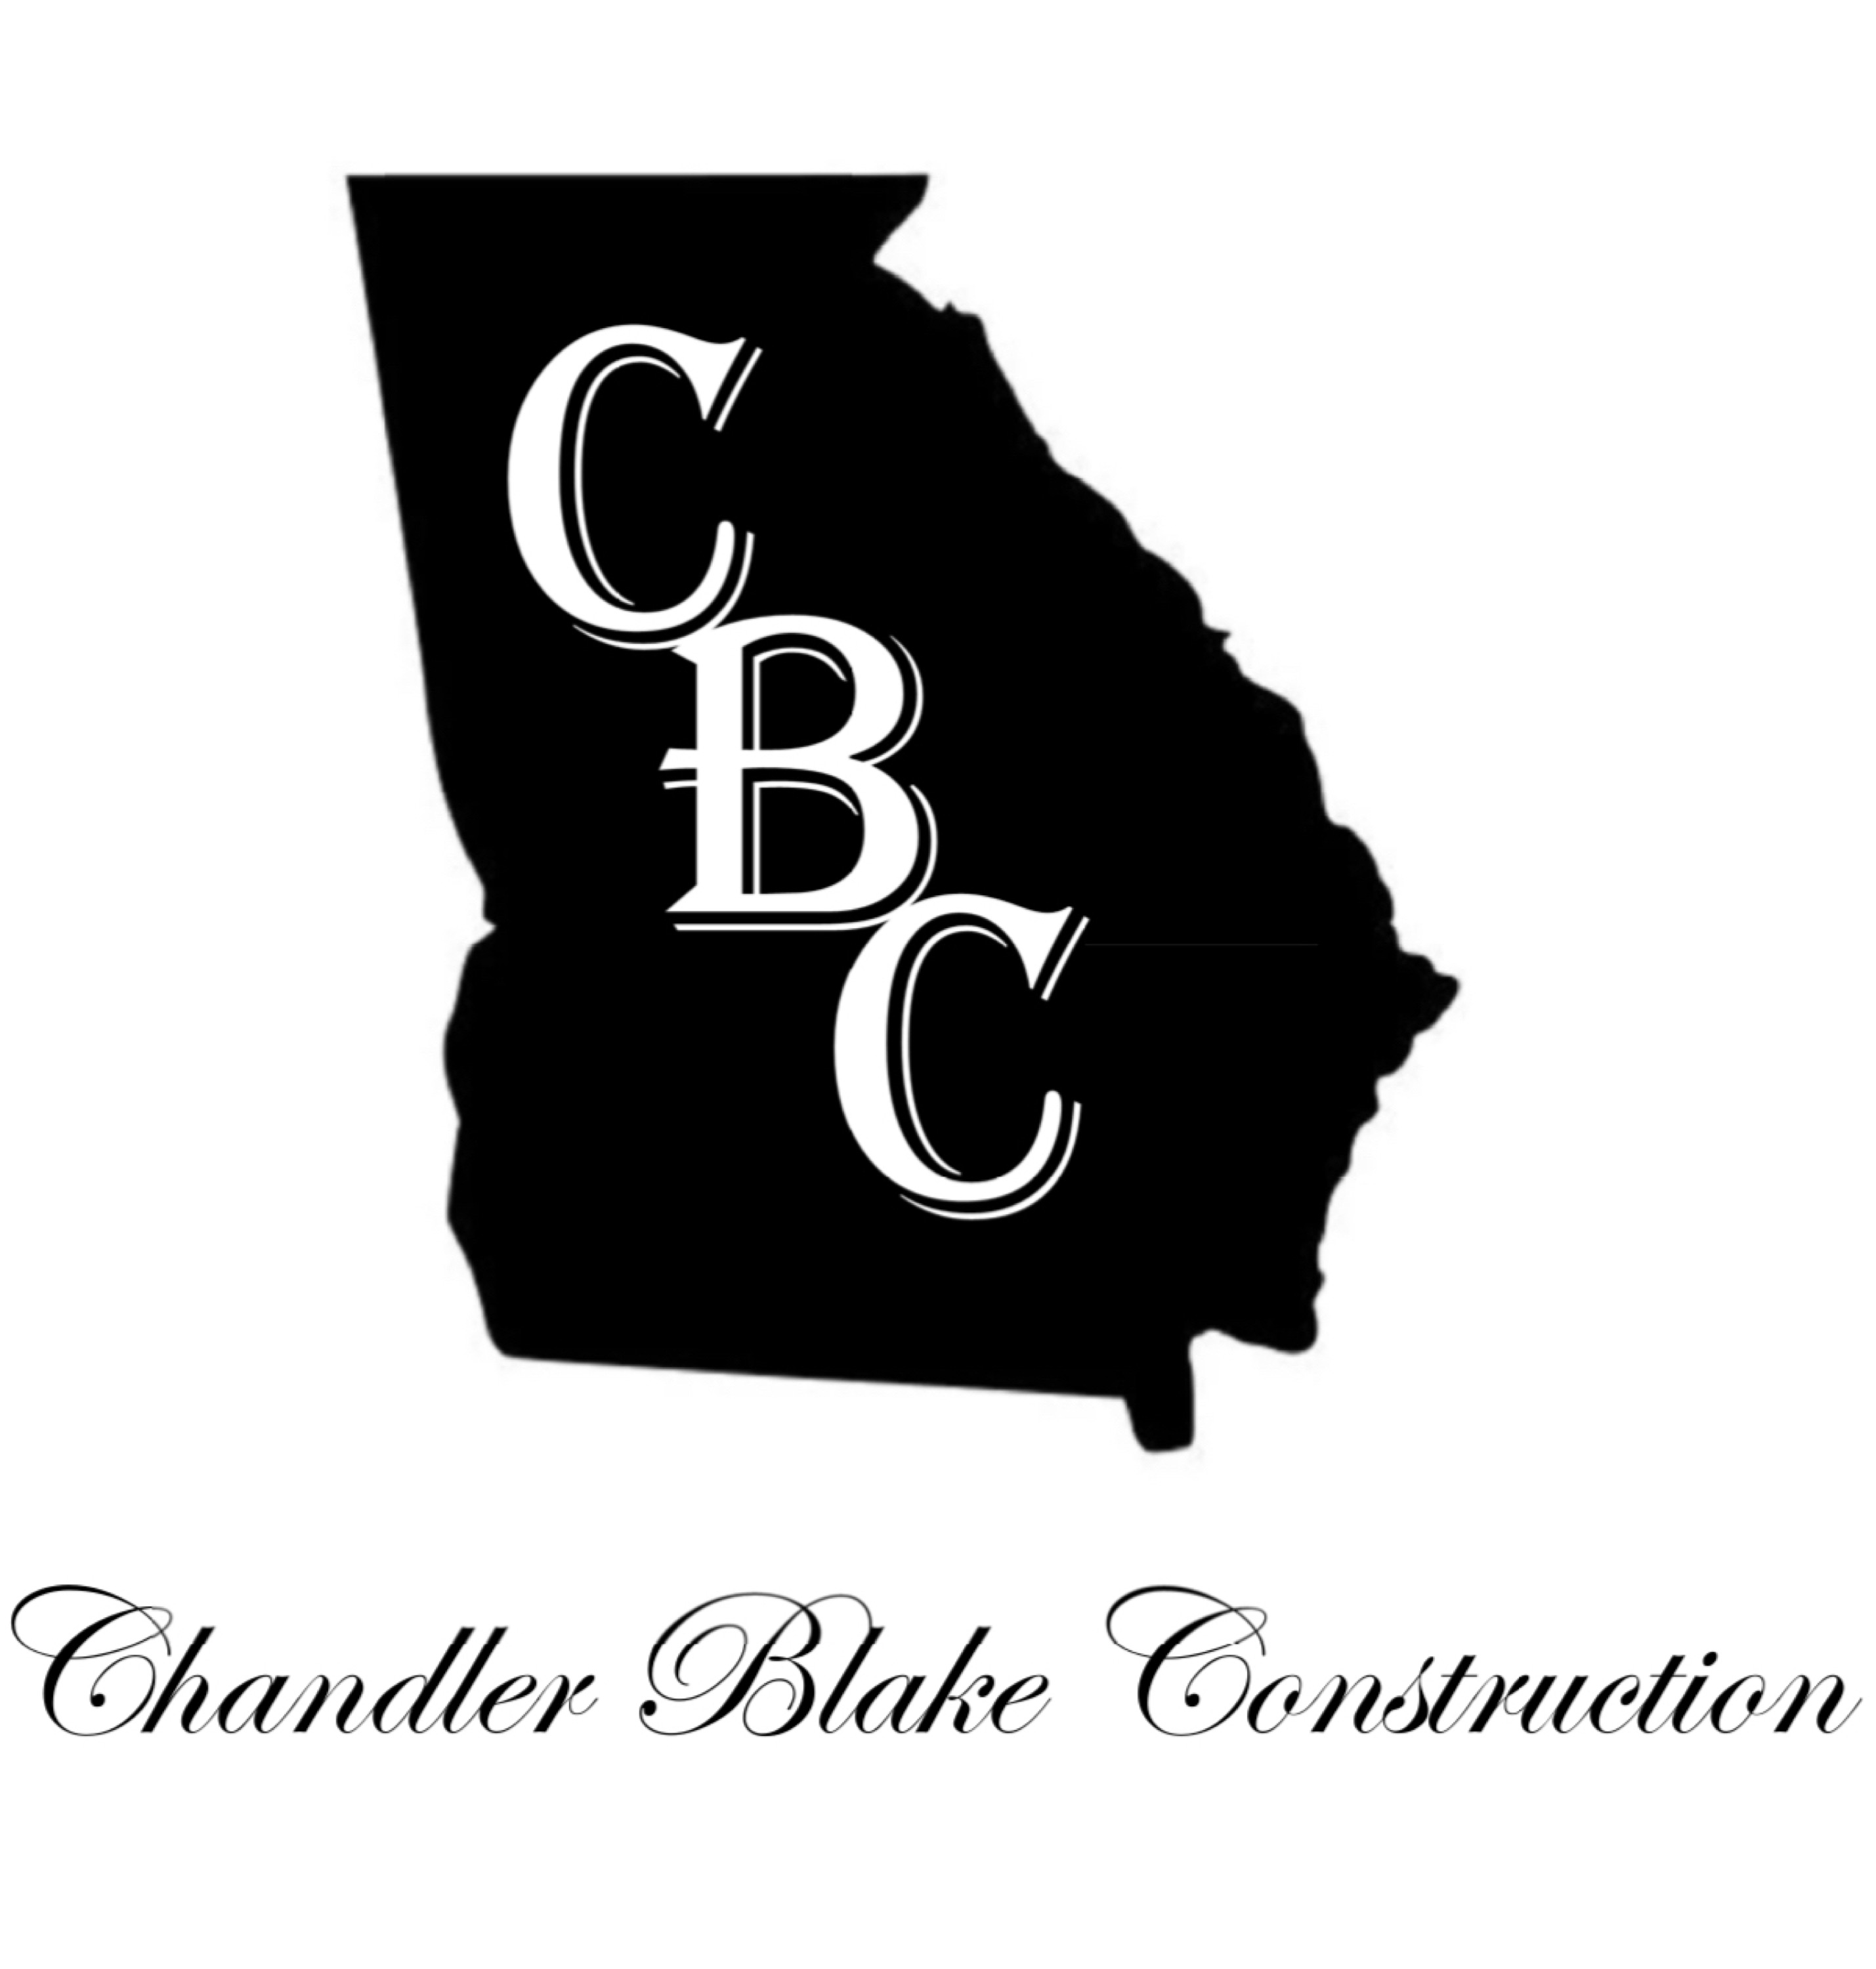 Chandler Blake Construction Logo